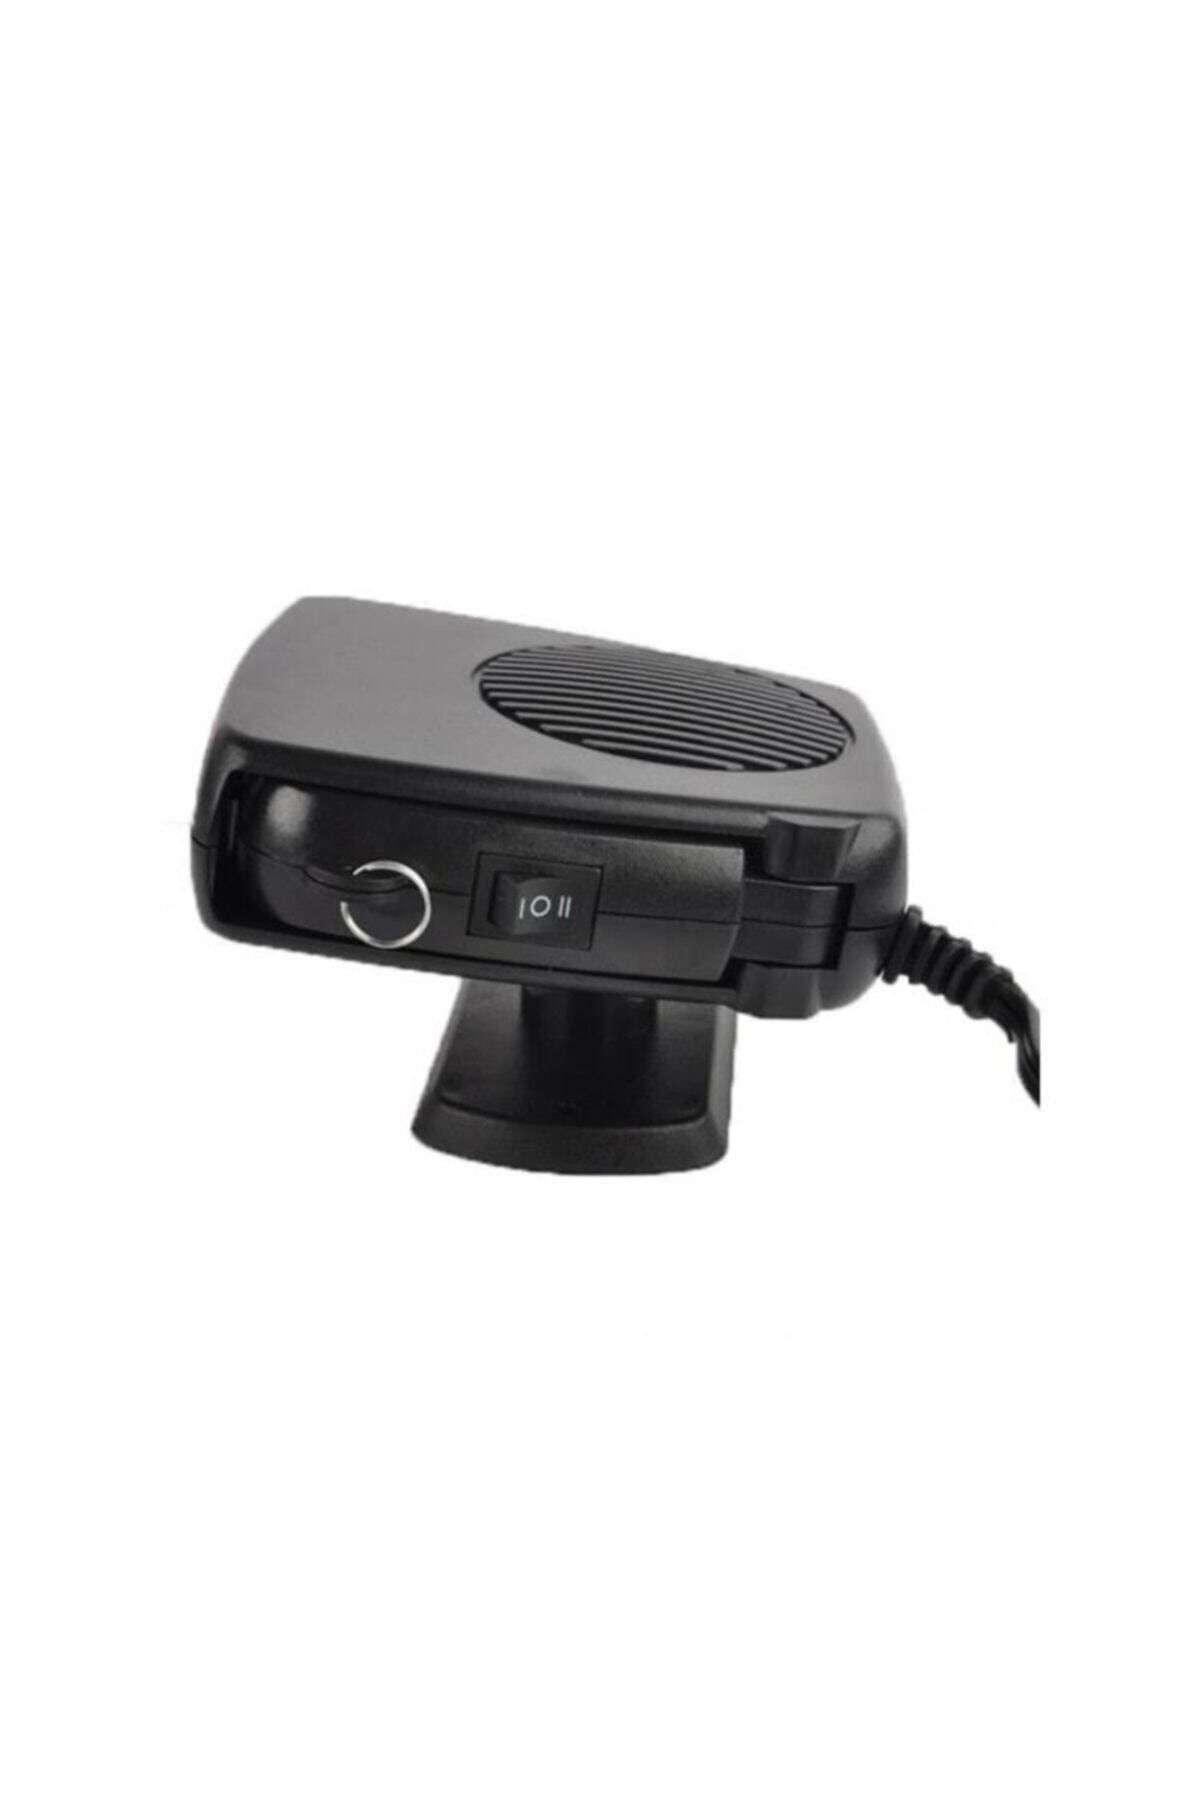 Gomax Fanlı Oto Cam Isıtıcı Buğu Çözücü Gmx1017153